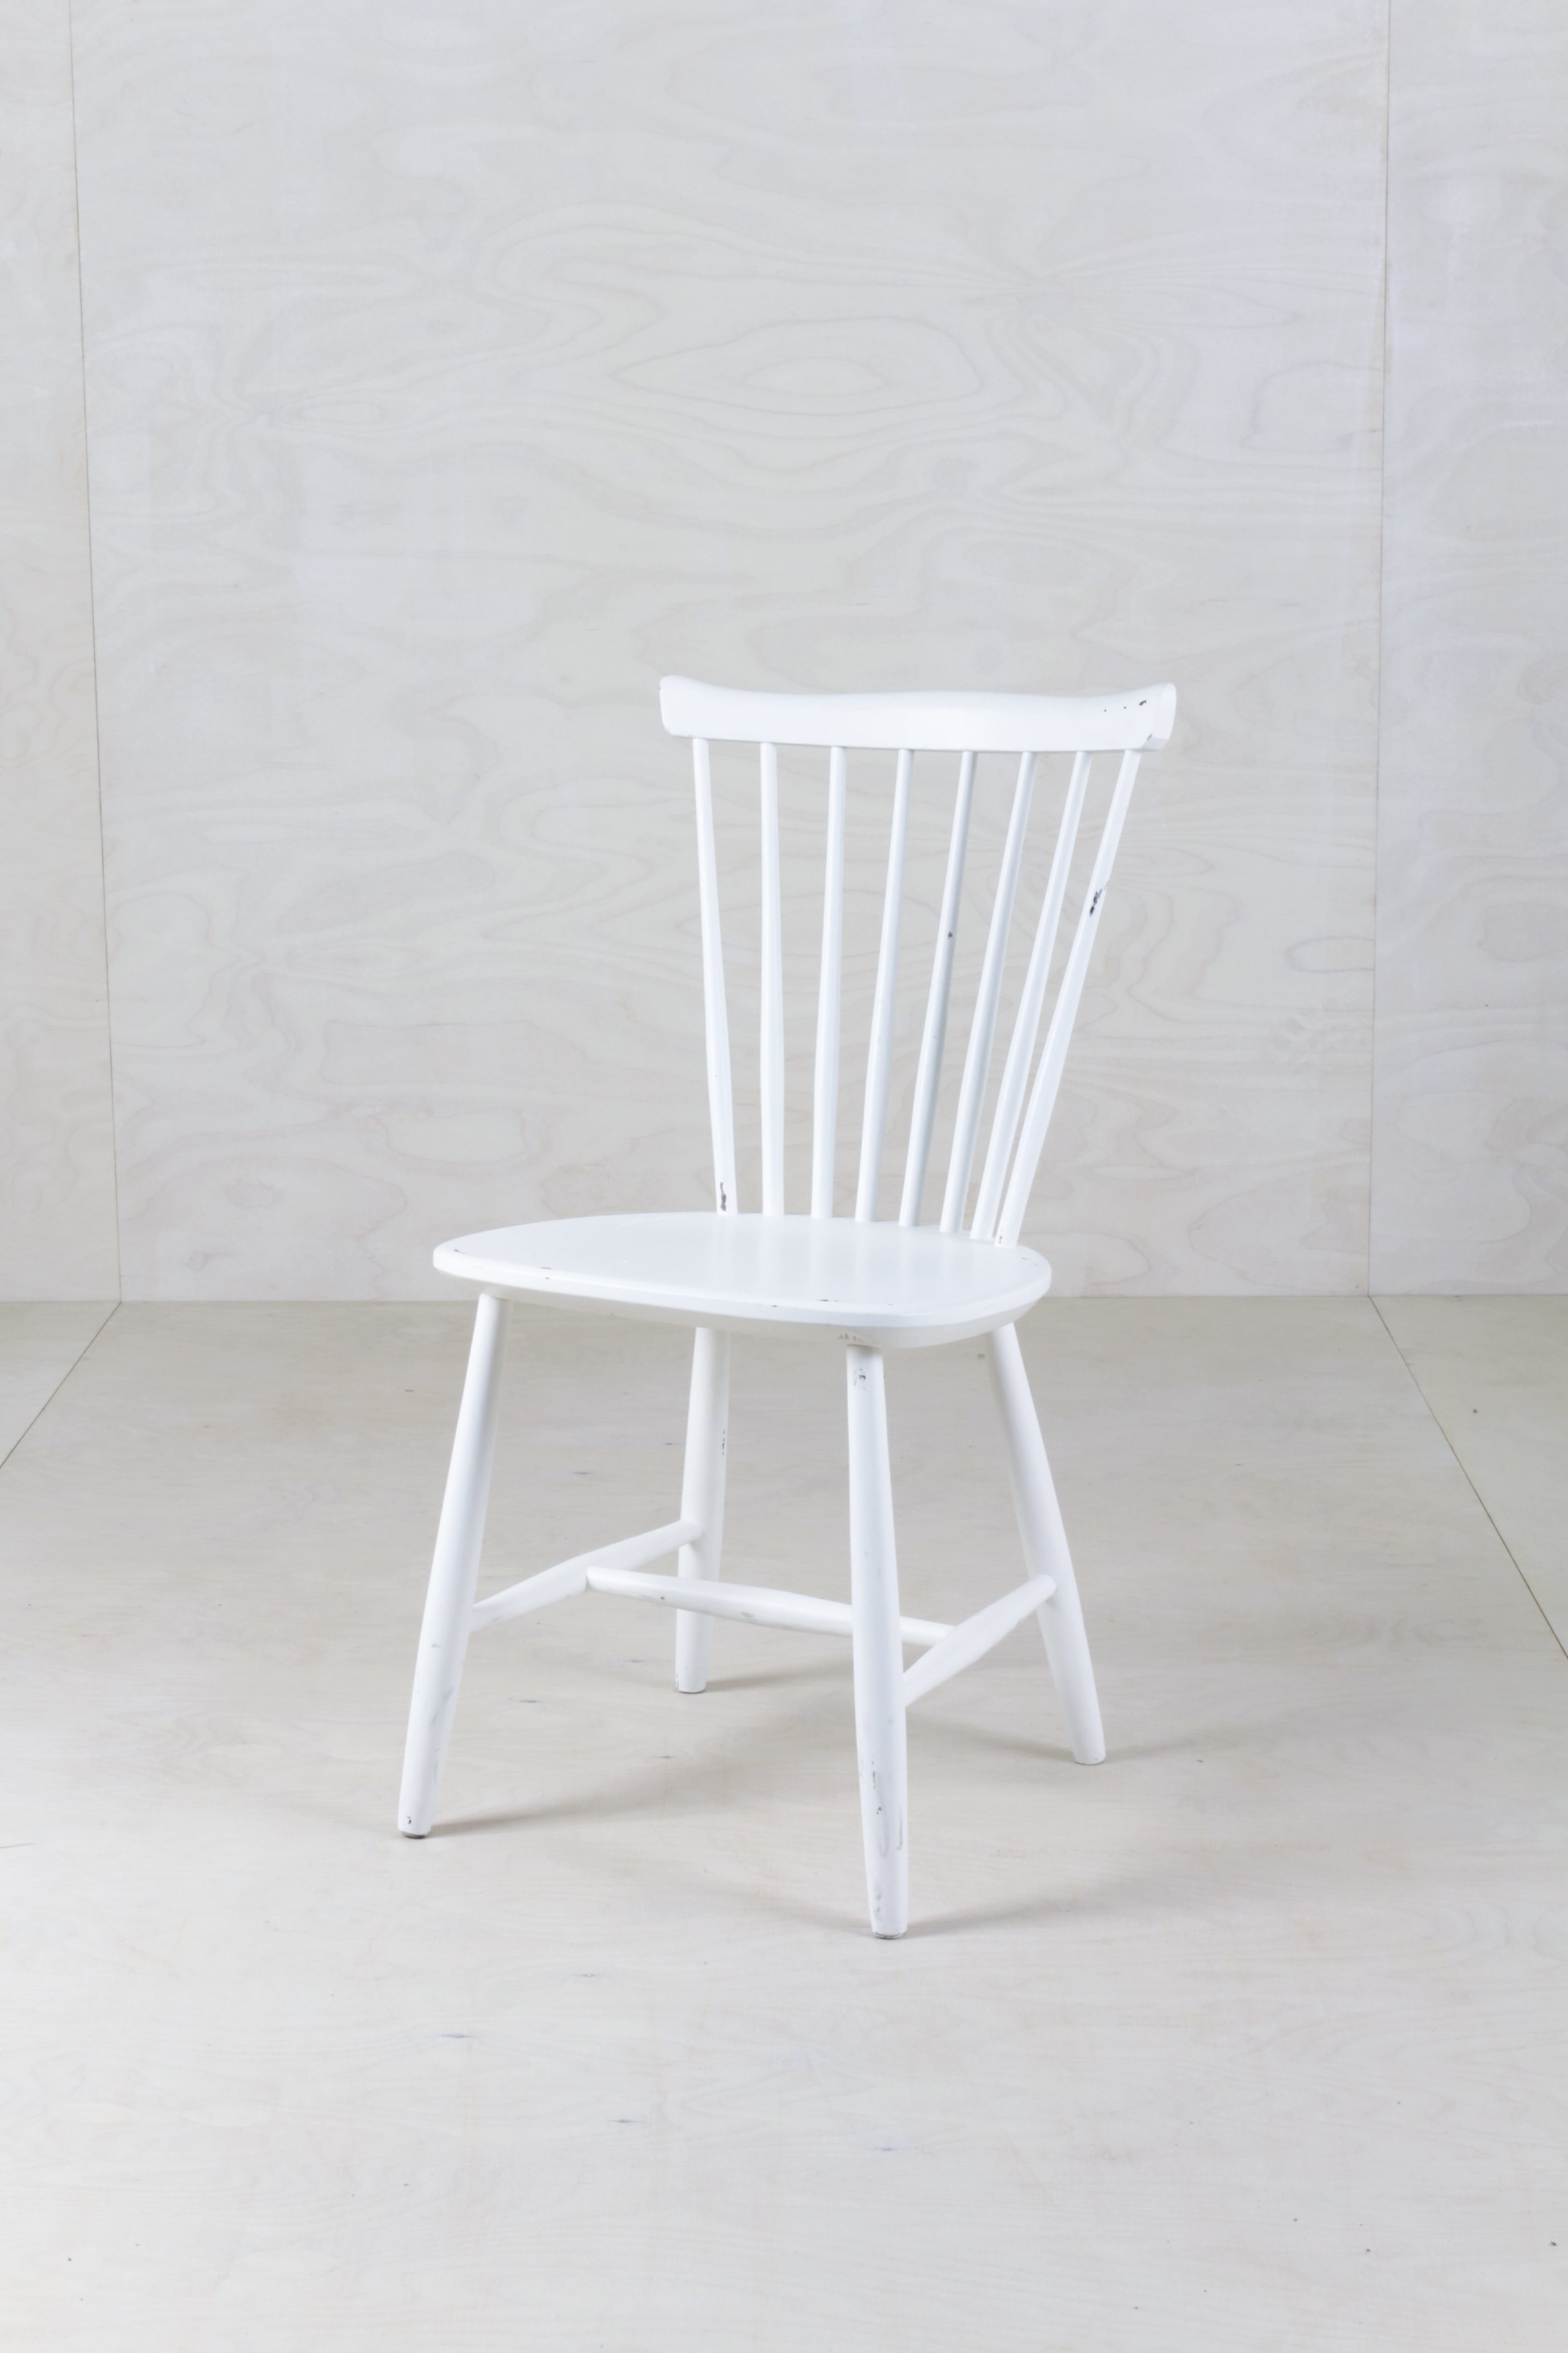 Holzstühle mieten, für Veranstaltungen, Hochzeitsdeko, Hochzeitsbestuhlung in weiß